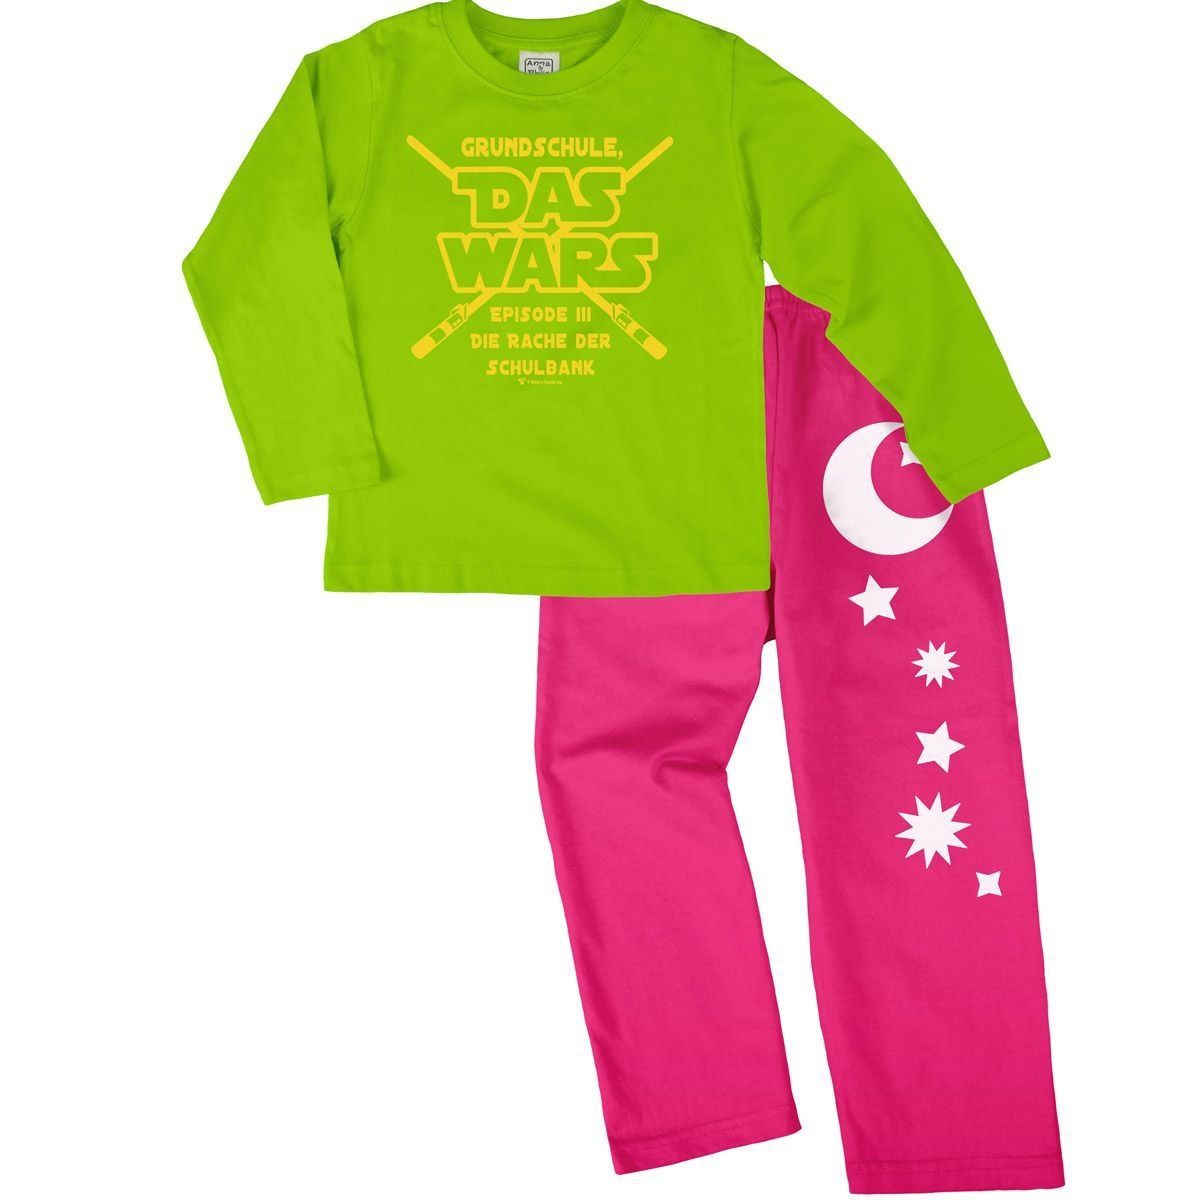 Das wars Grundschule Pyjama Set hellgrün / pink 134 / 140